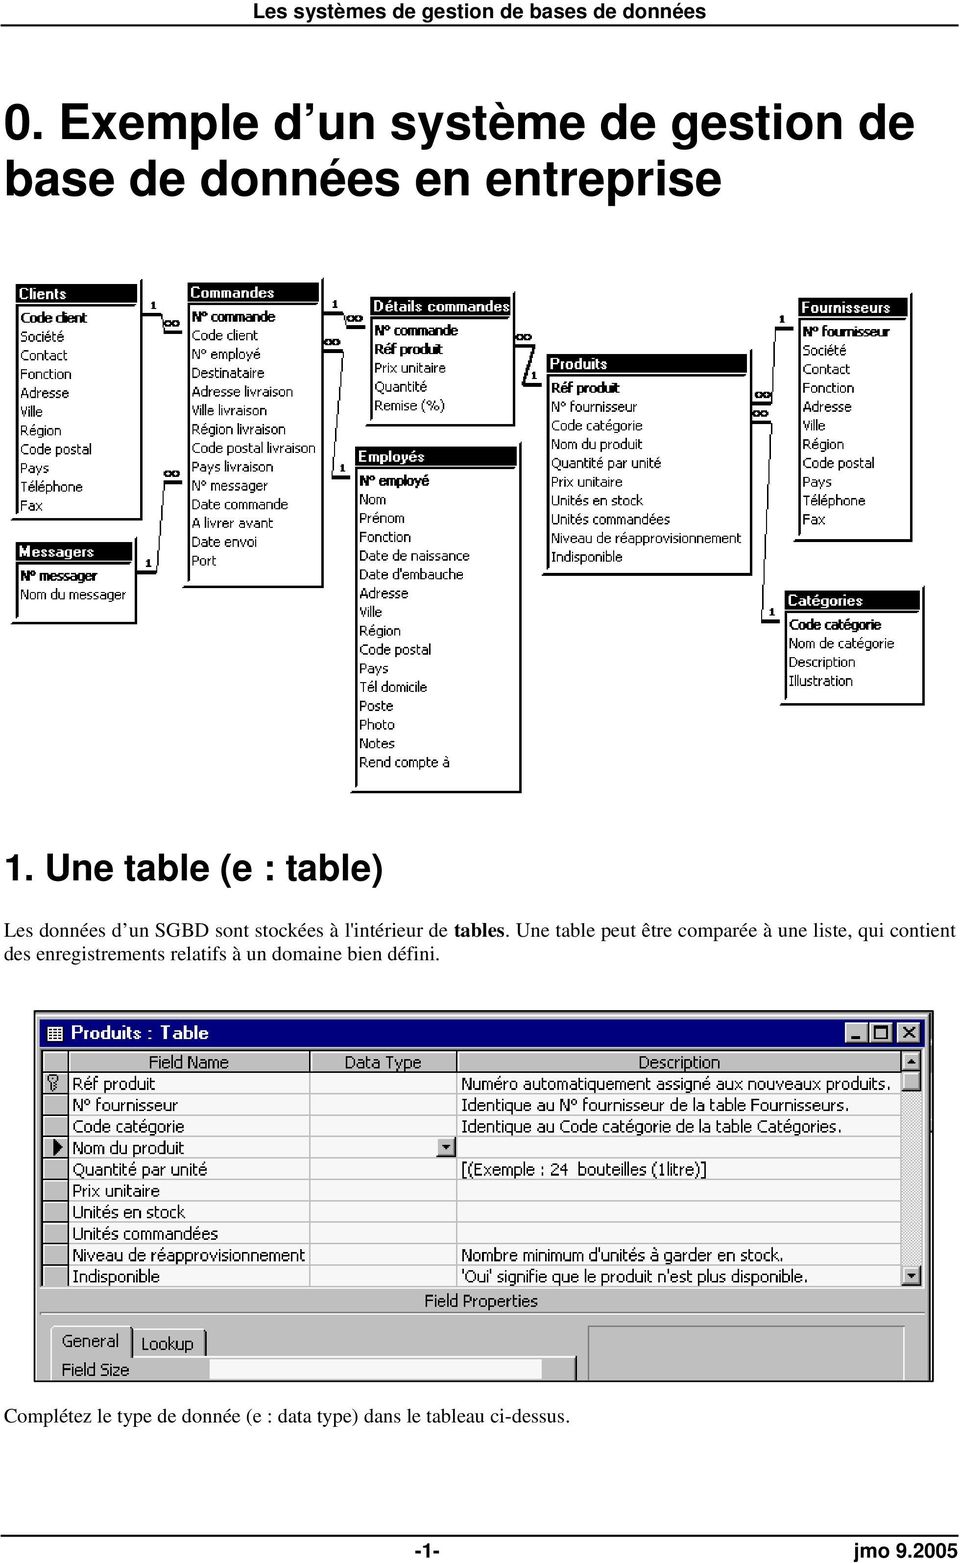 Une table peut être comparée à une liste, qui contient des enregistrements relatifs à